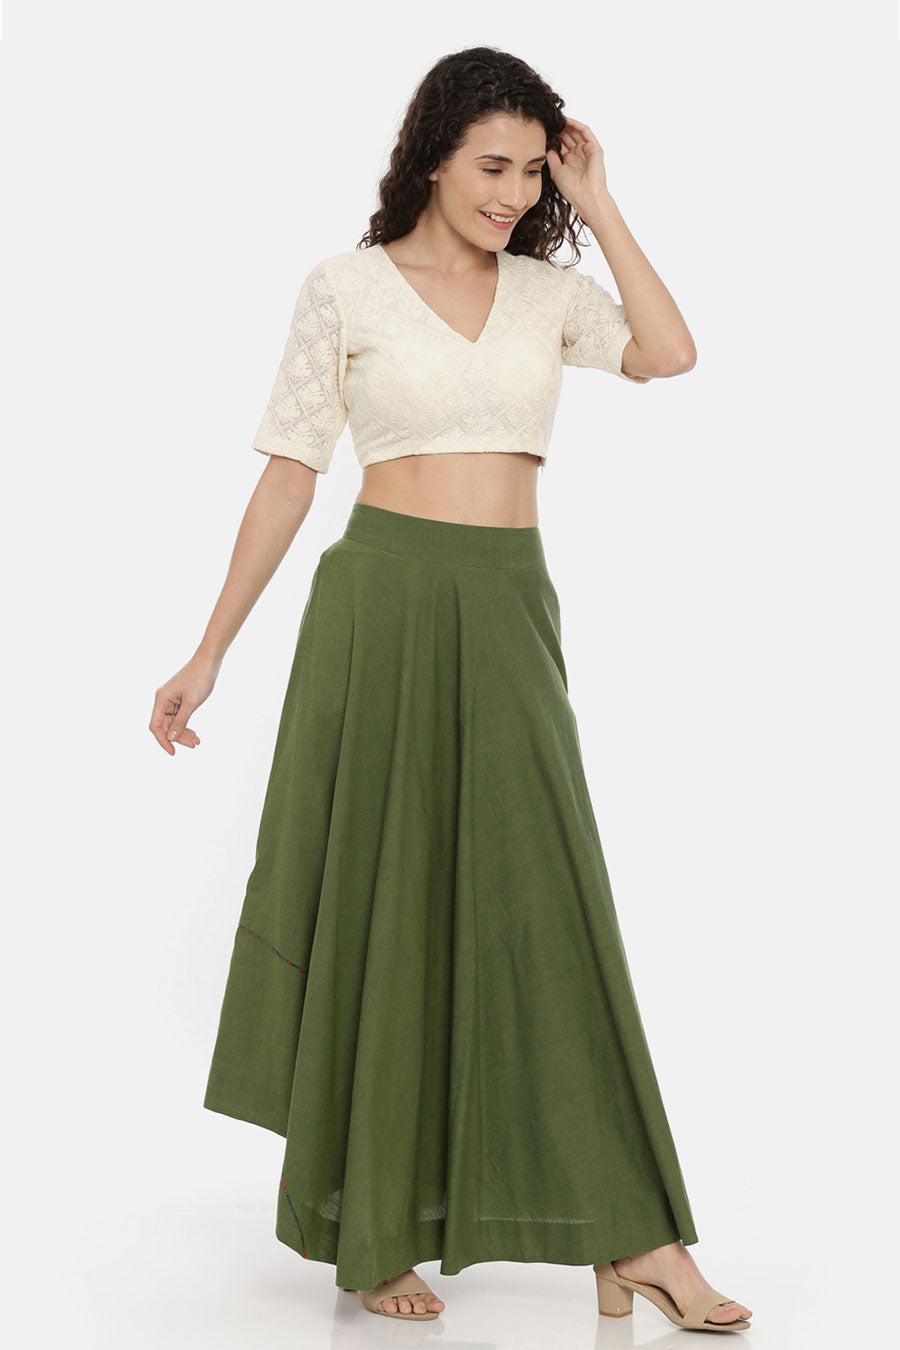 Green Cotton Asymmetrical Skirt